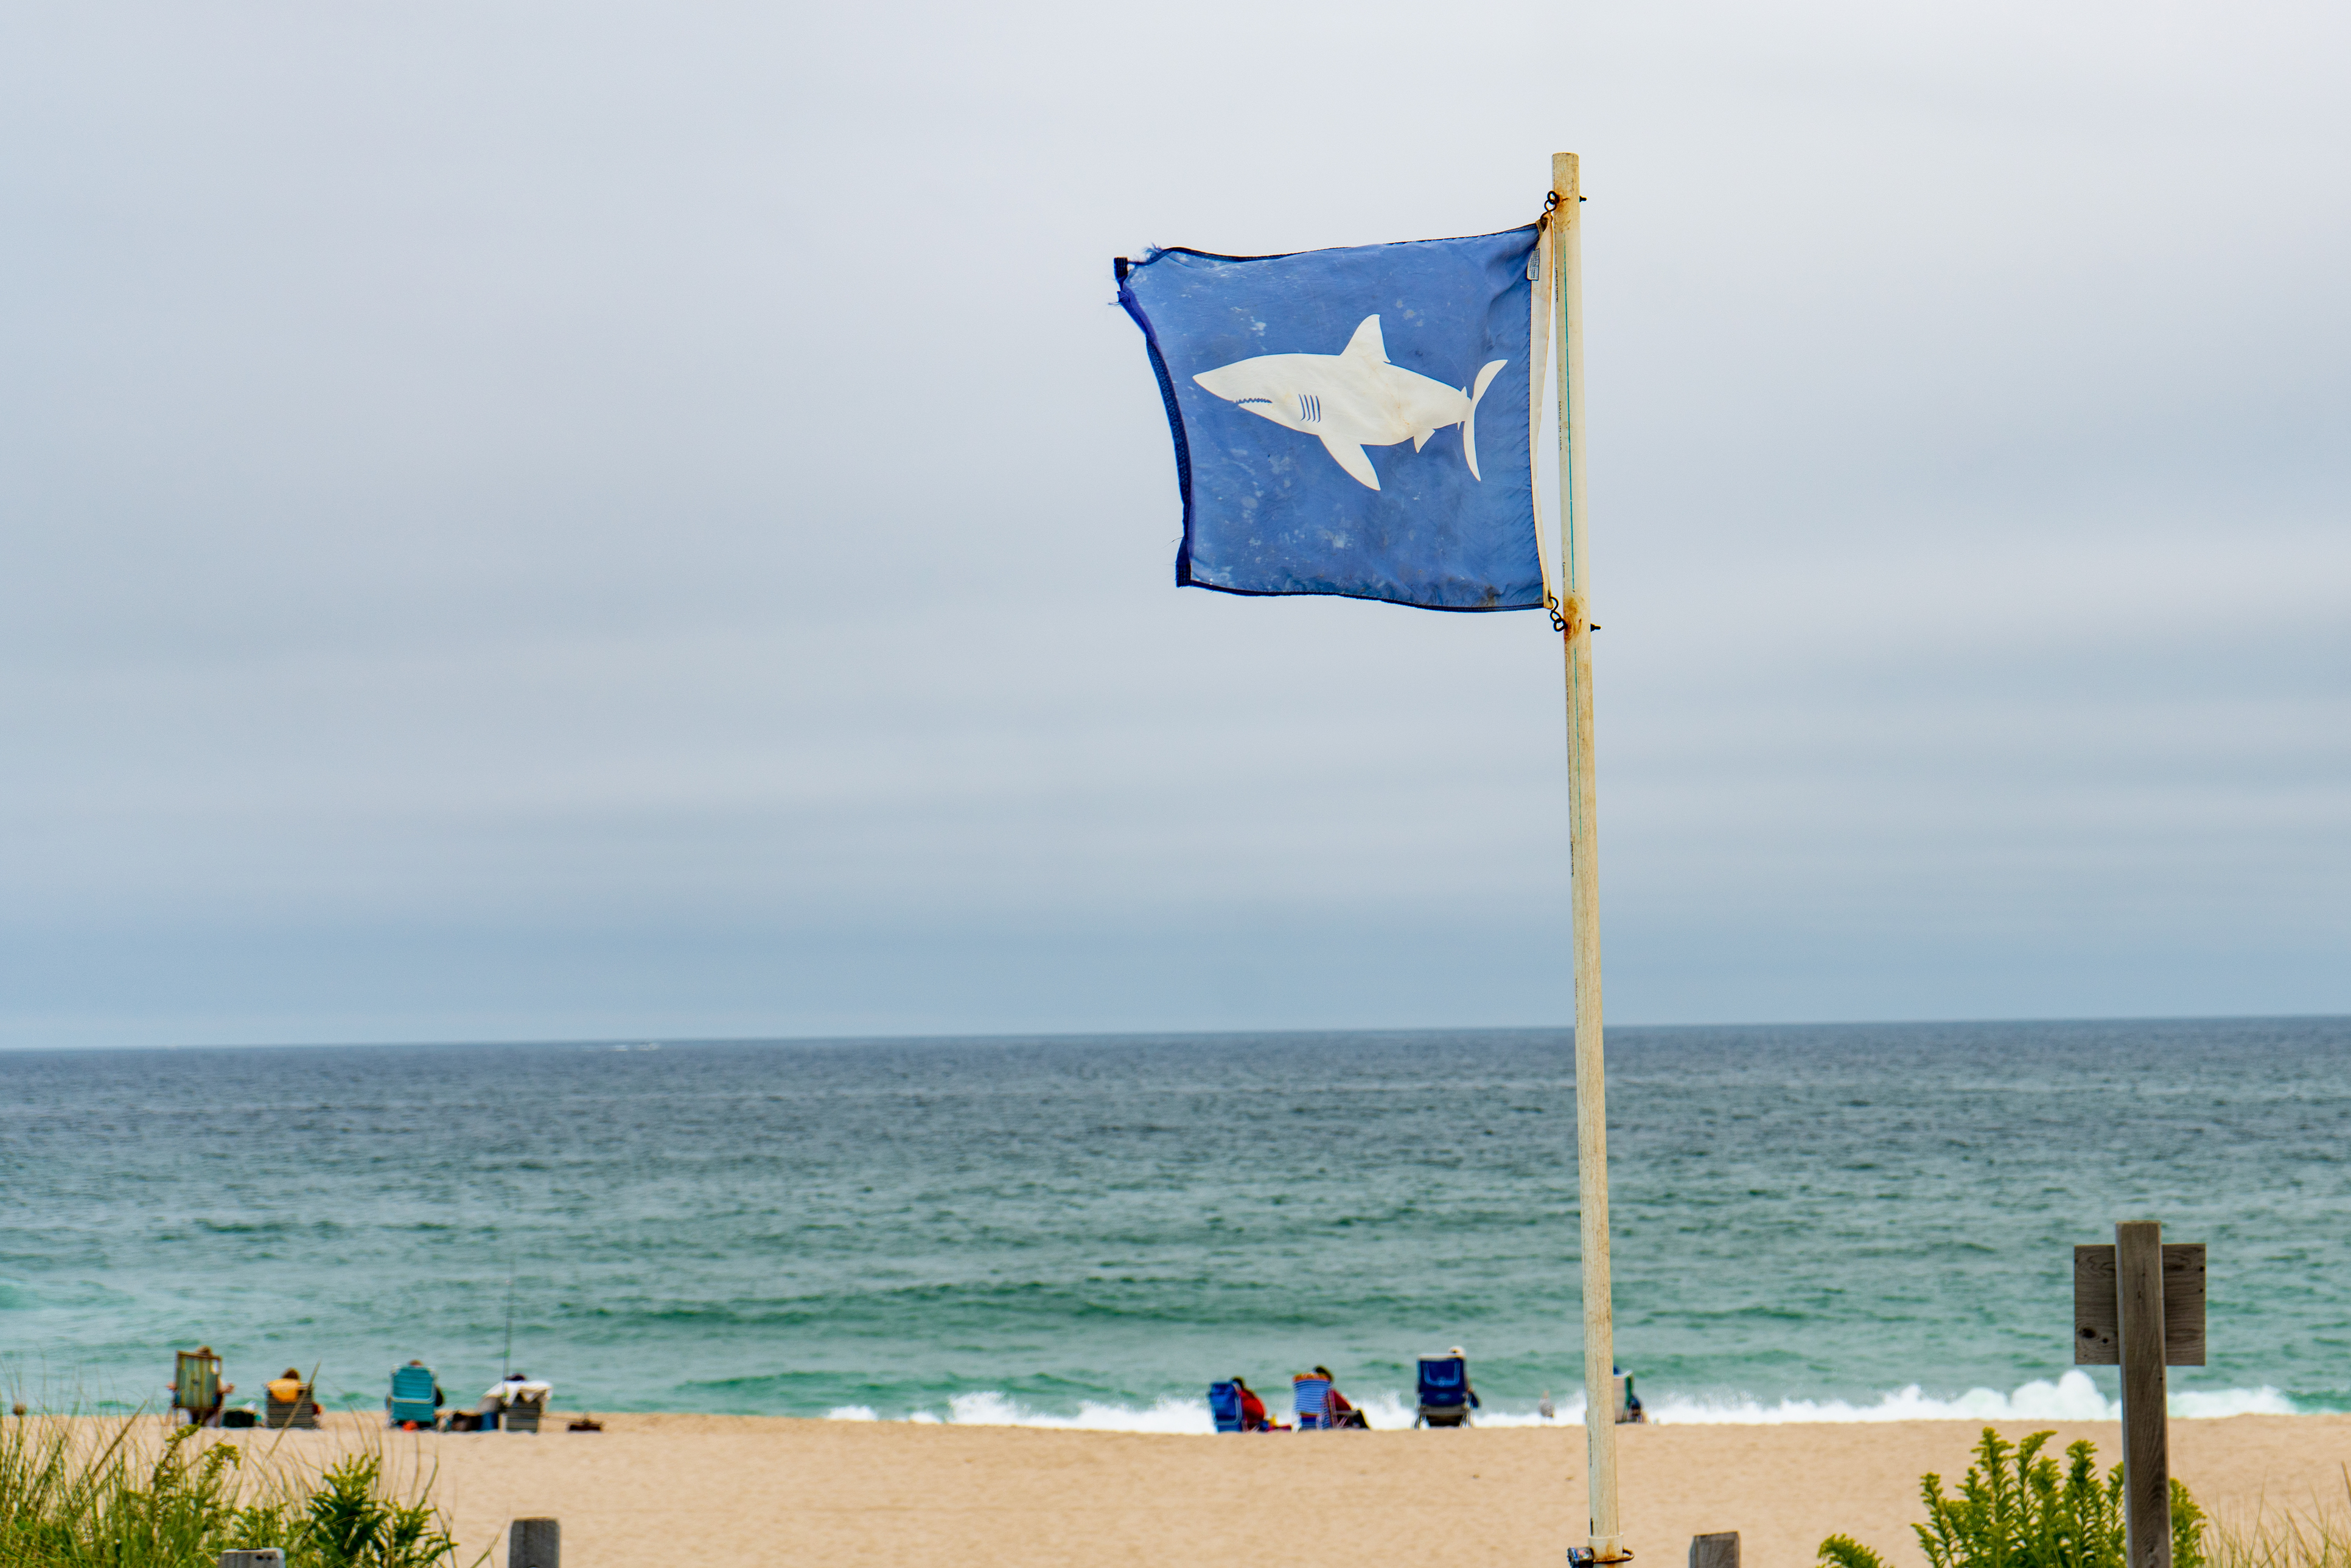 Shark danger flag flying along the Atlantic coast